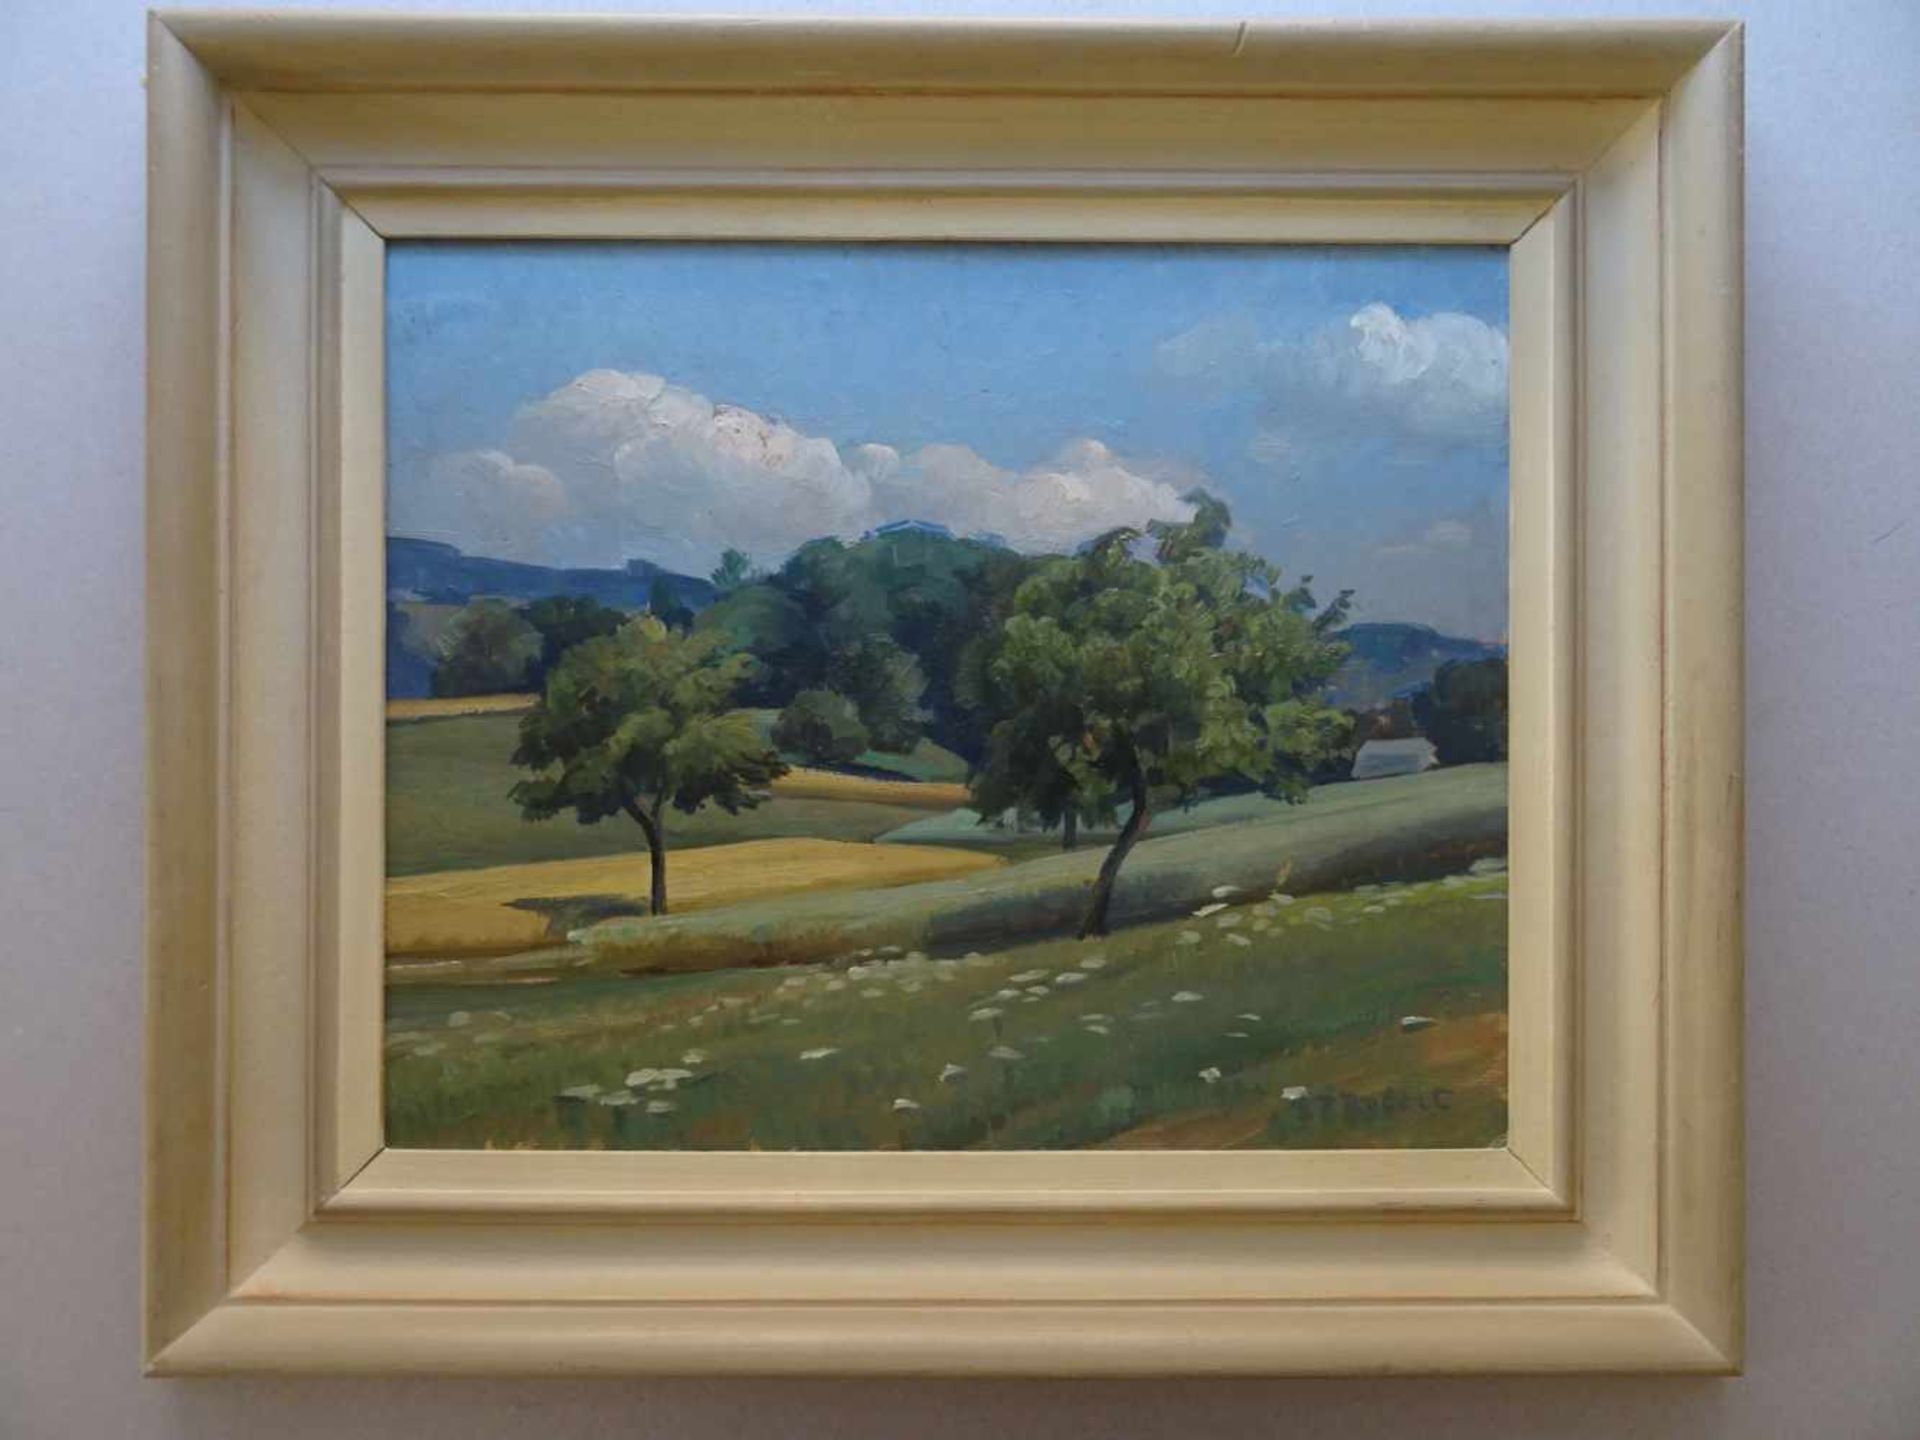 Robert, Steven-Paul(Vevey 1896 - 1985 Clarens). Landschaft. Öl auf Hartfaser, um 1960. Unten